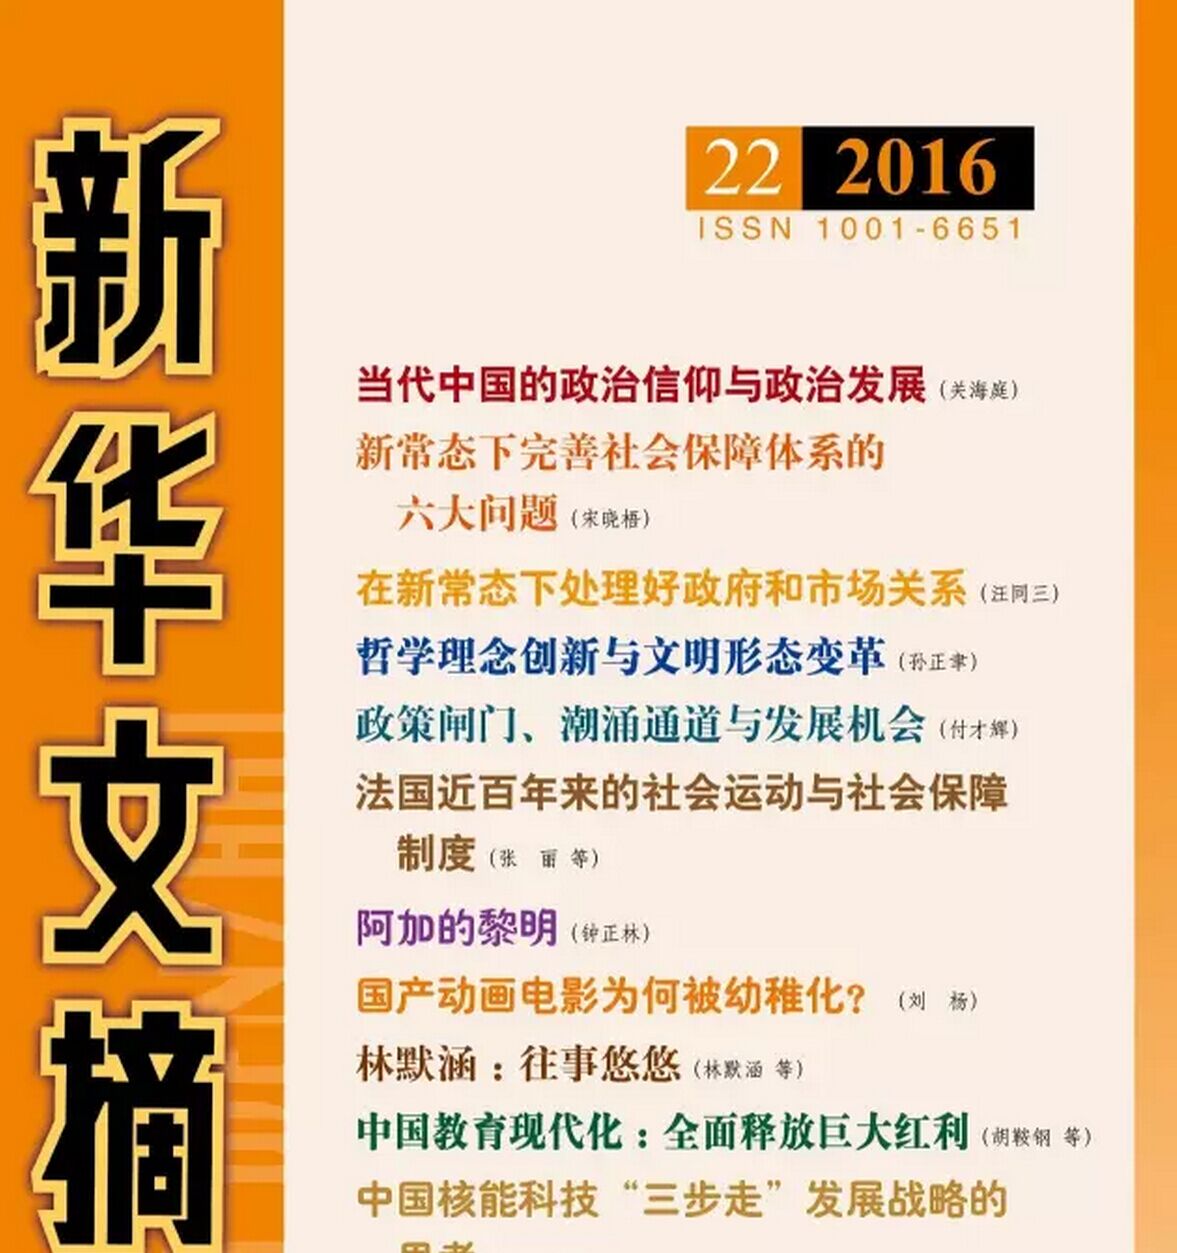 宋海彬副教授日本马克思主义法学的译文被《新华文摘》全文转载